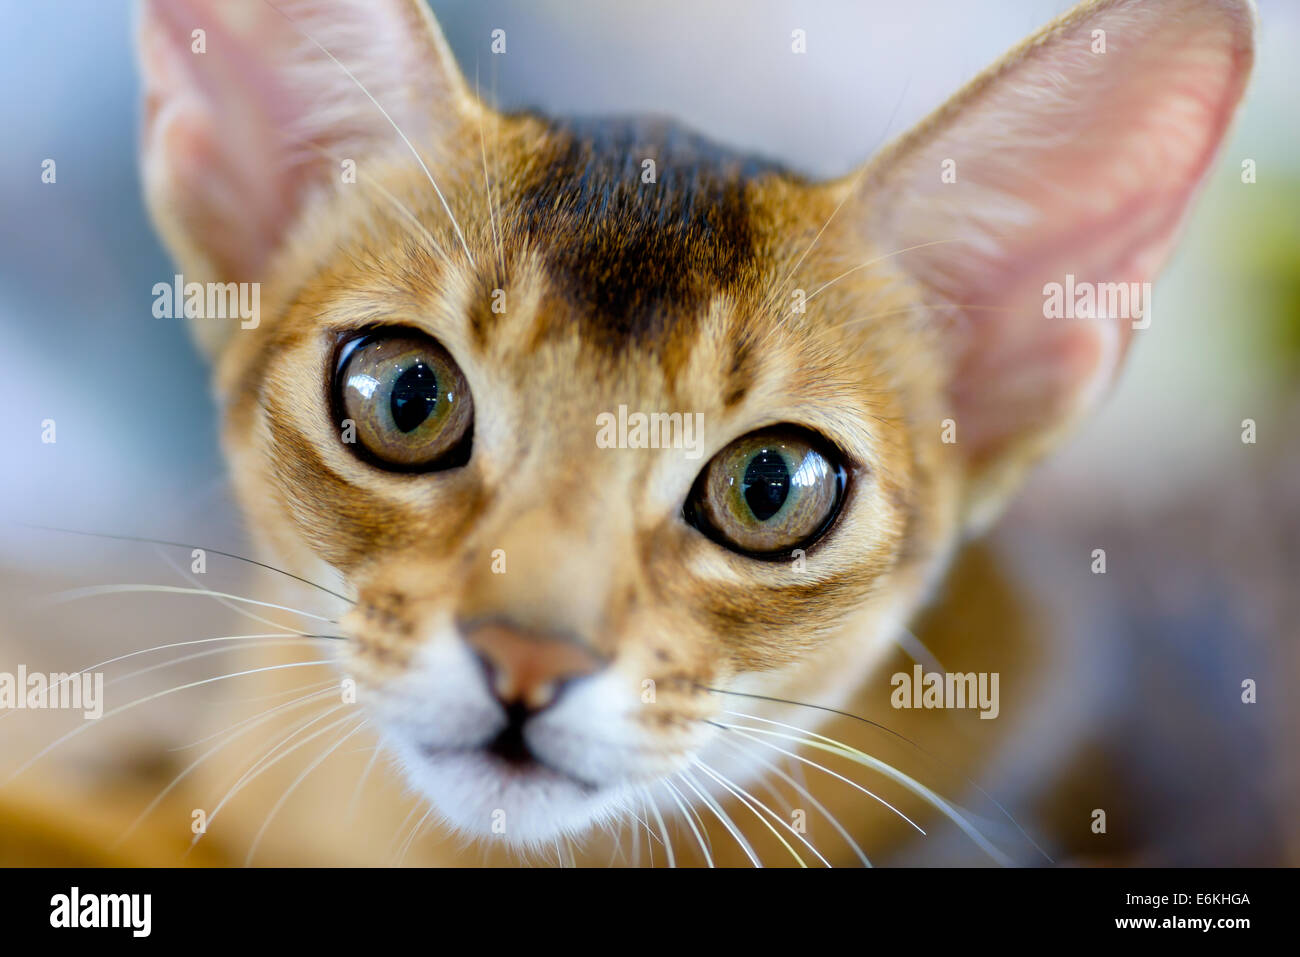 Animales: close-up retrato de joven gato abisinio Foto de stock